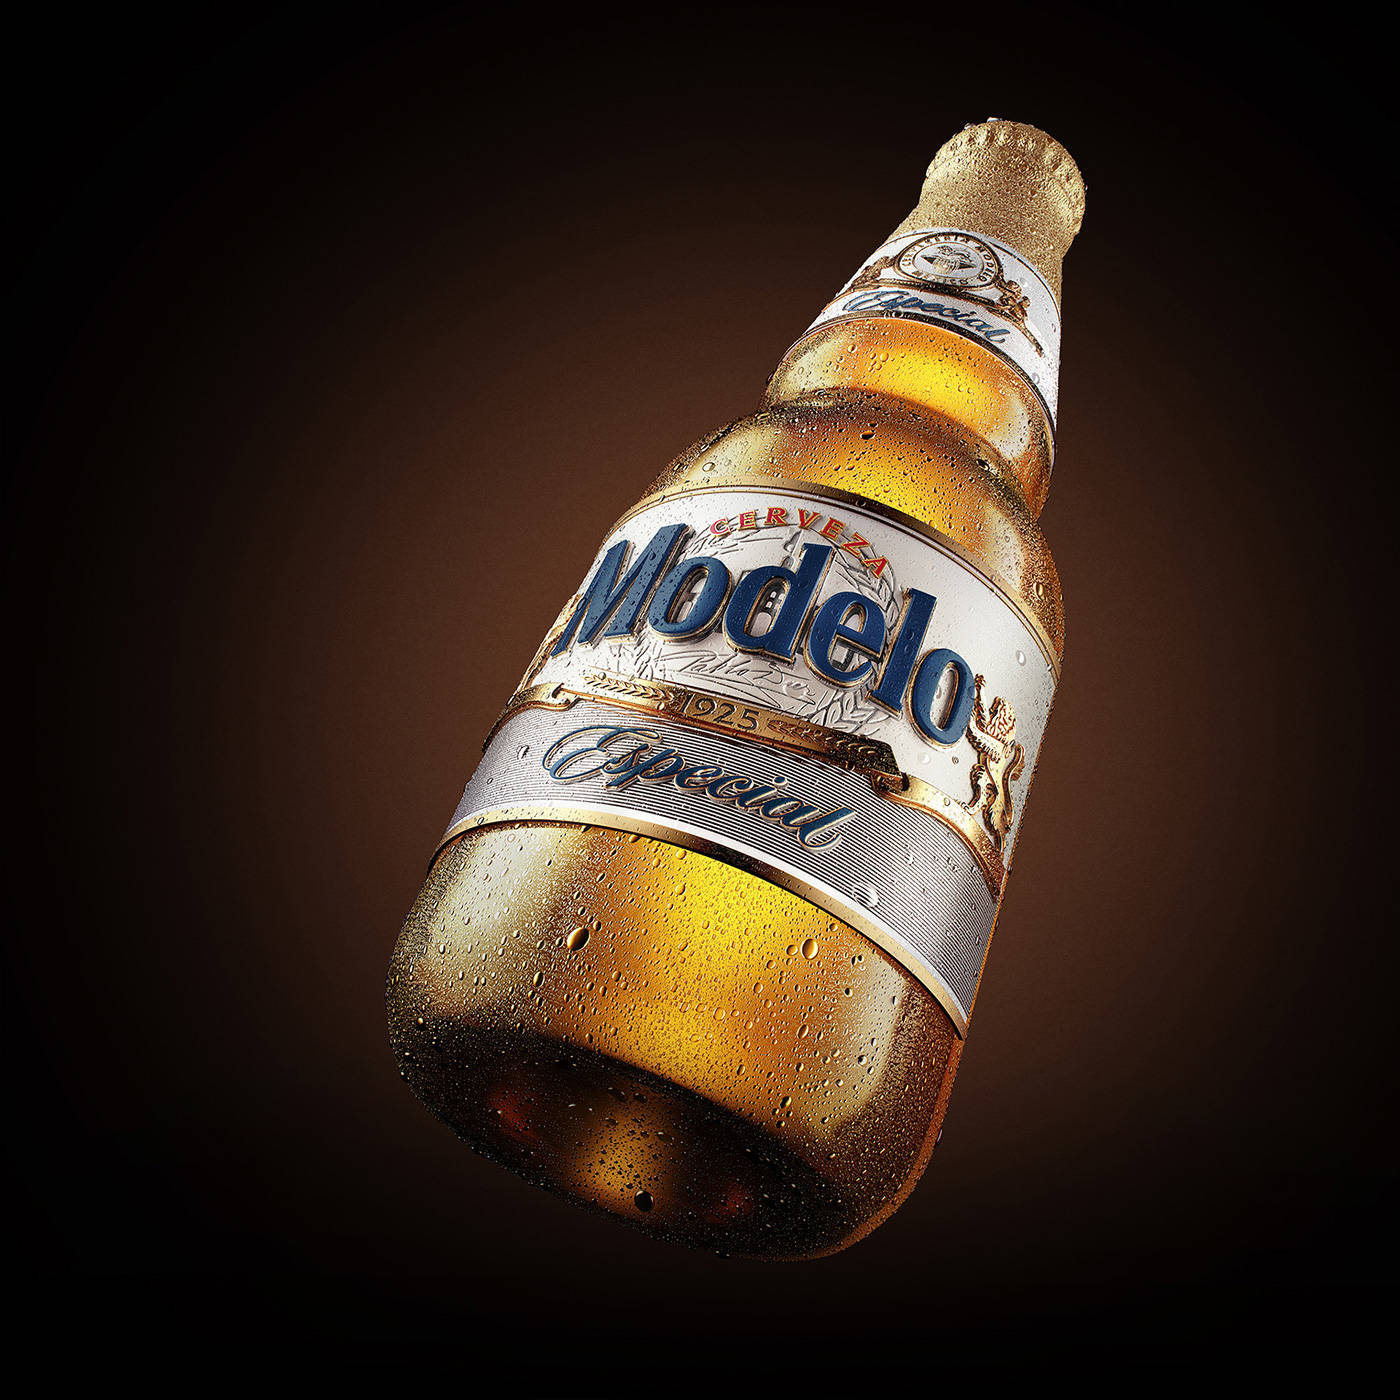 Realistisk3d-rendering Av En Modelo Especial-flaska. Wallpaper